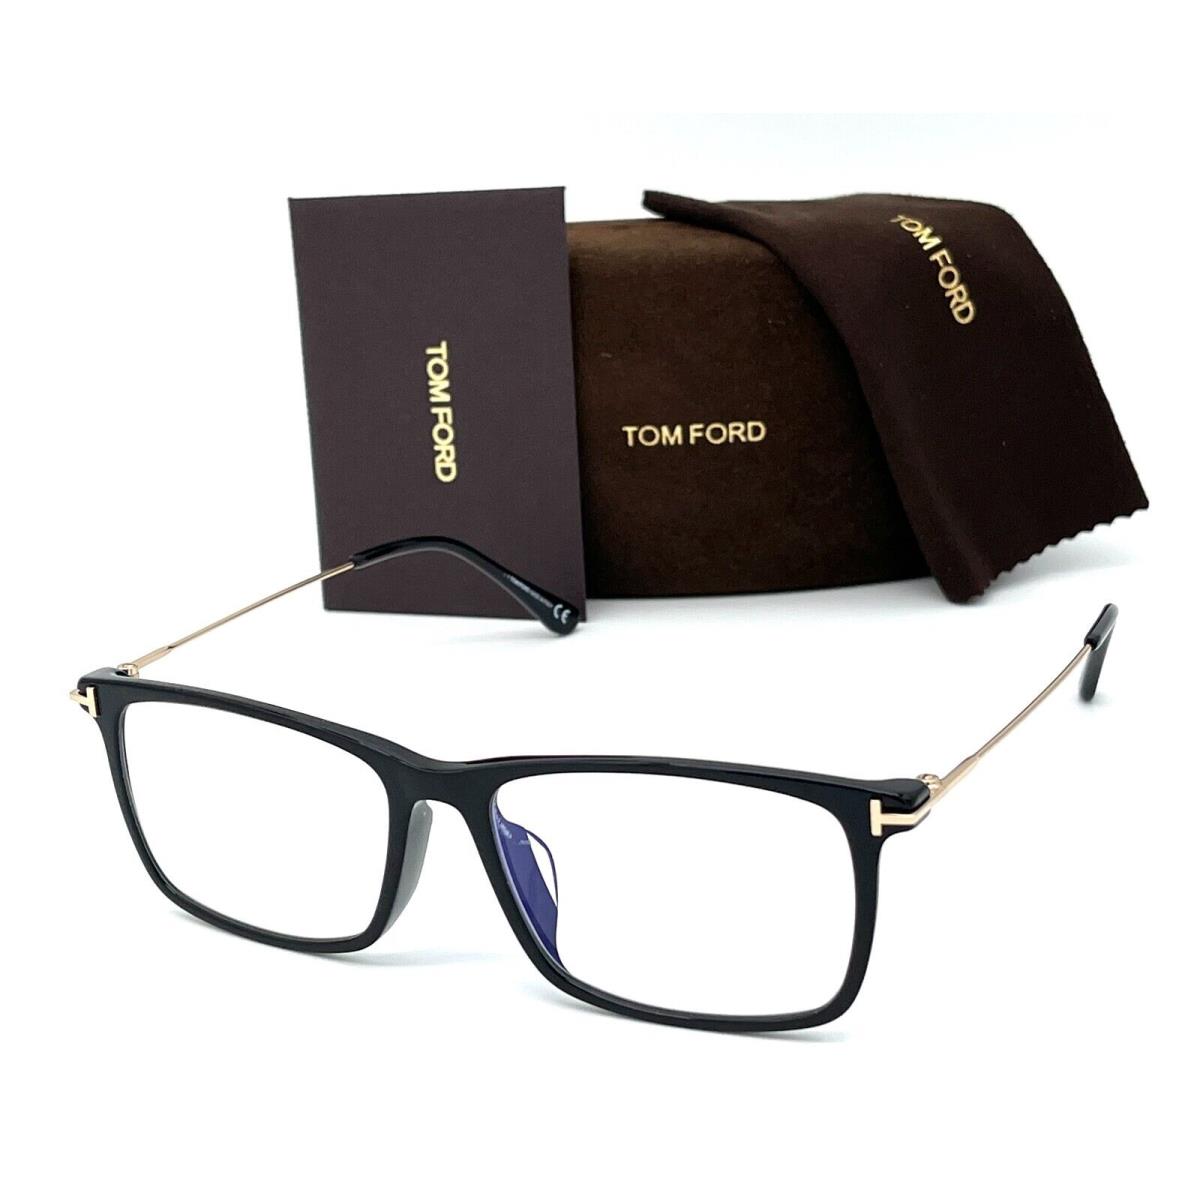 Tom Ford eyeglasses  - Shiny Black Frame, Blue Block Lens 0